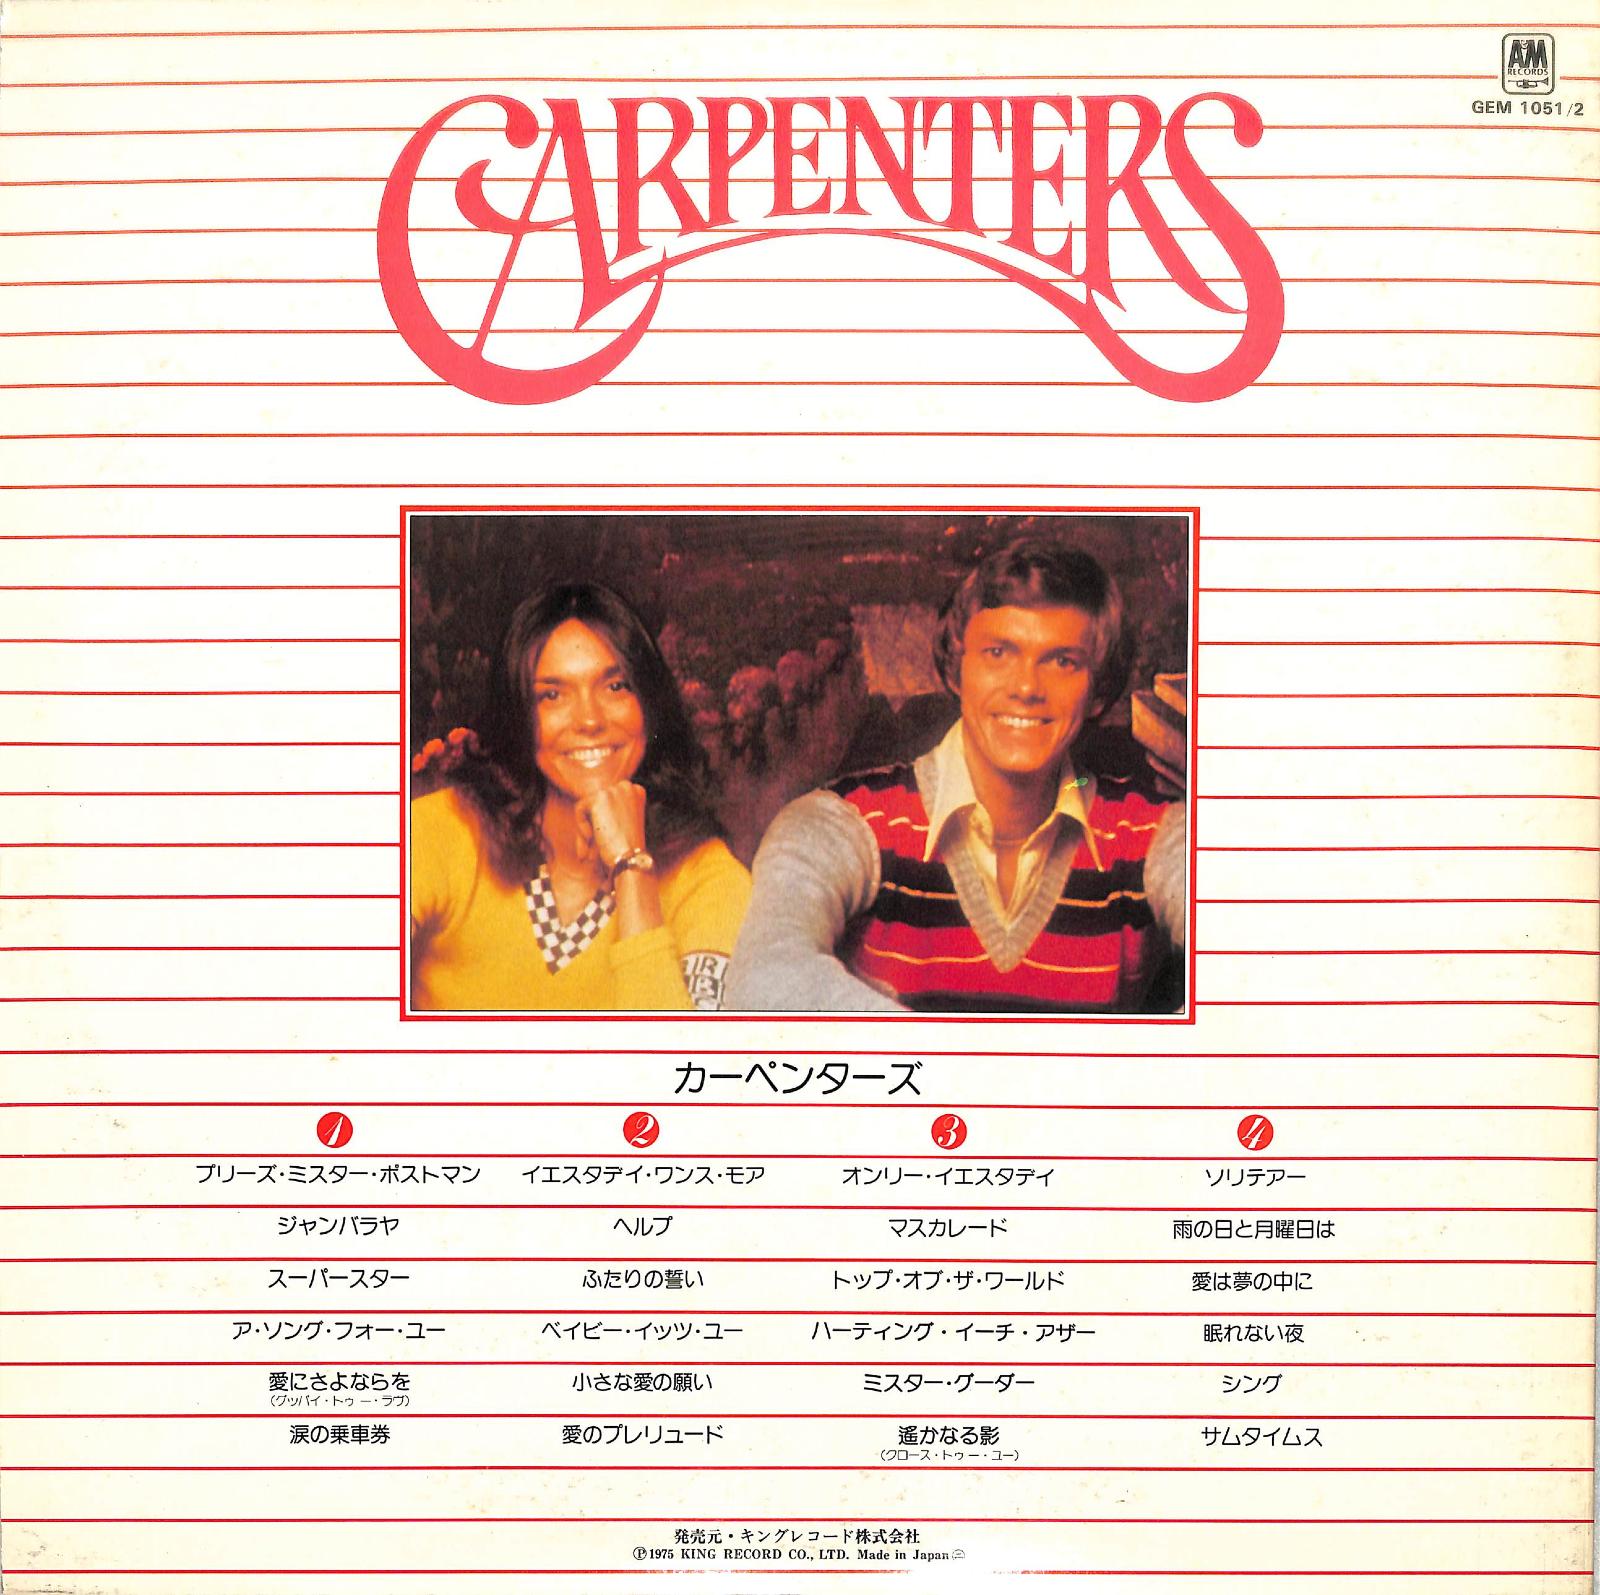 CARPENTERS - Gem Of Carpenters